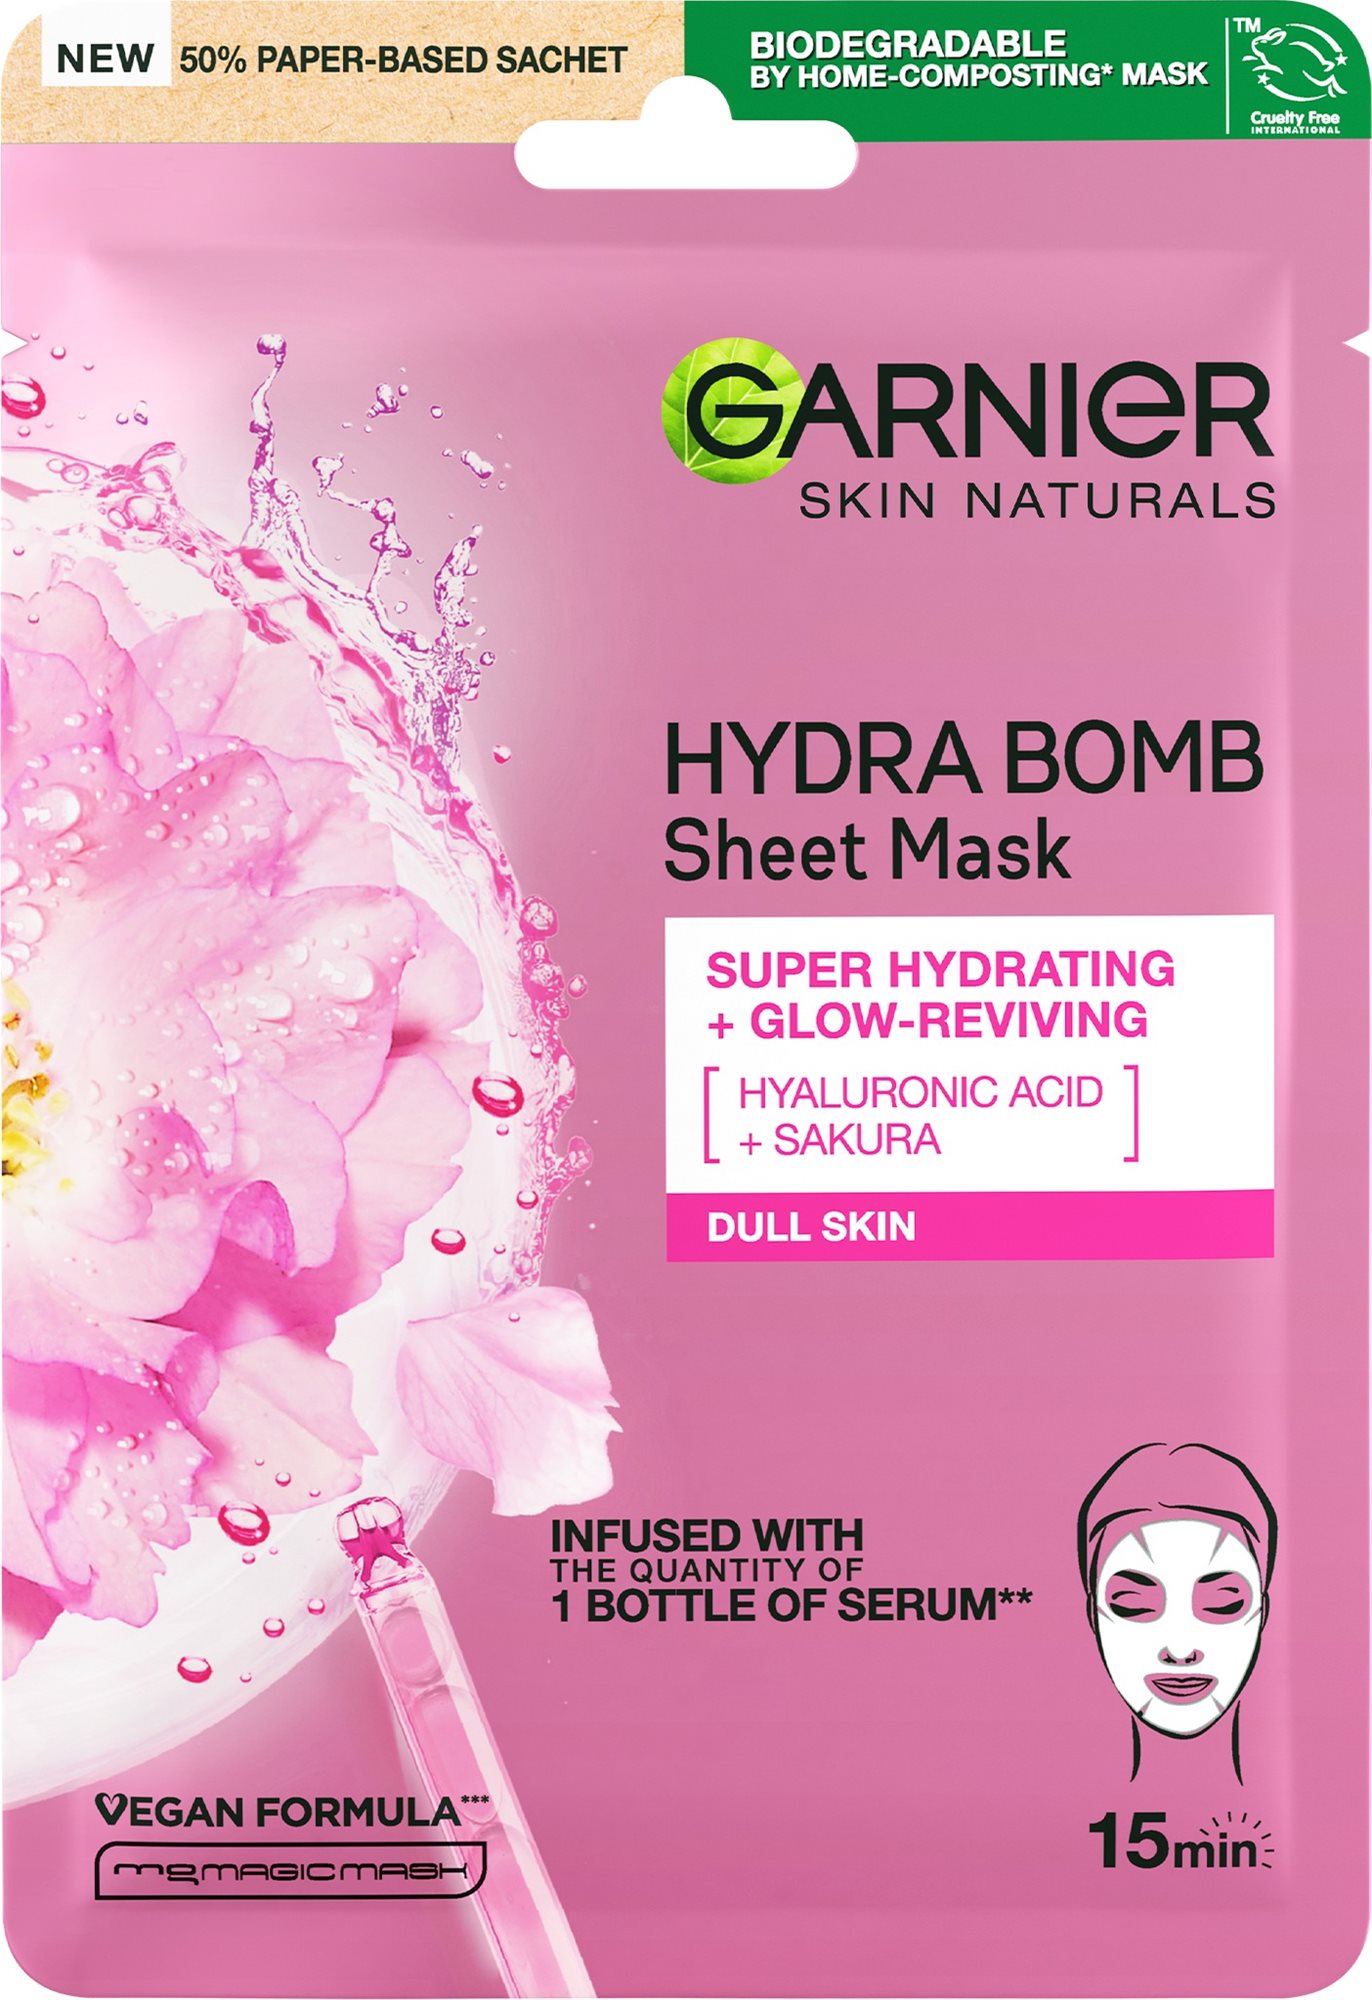 GARNIER Skin Naturals élénkítő textil arcpakolás sakura kivonattal, 28 g